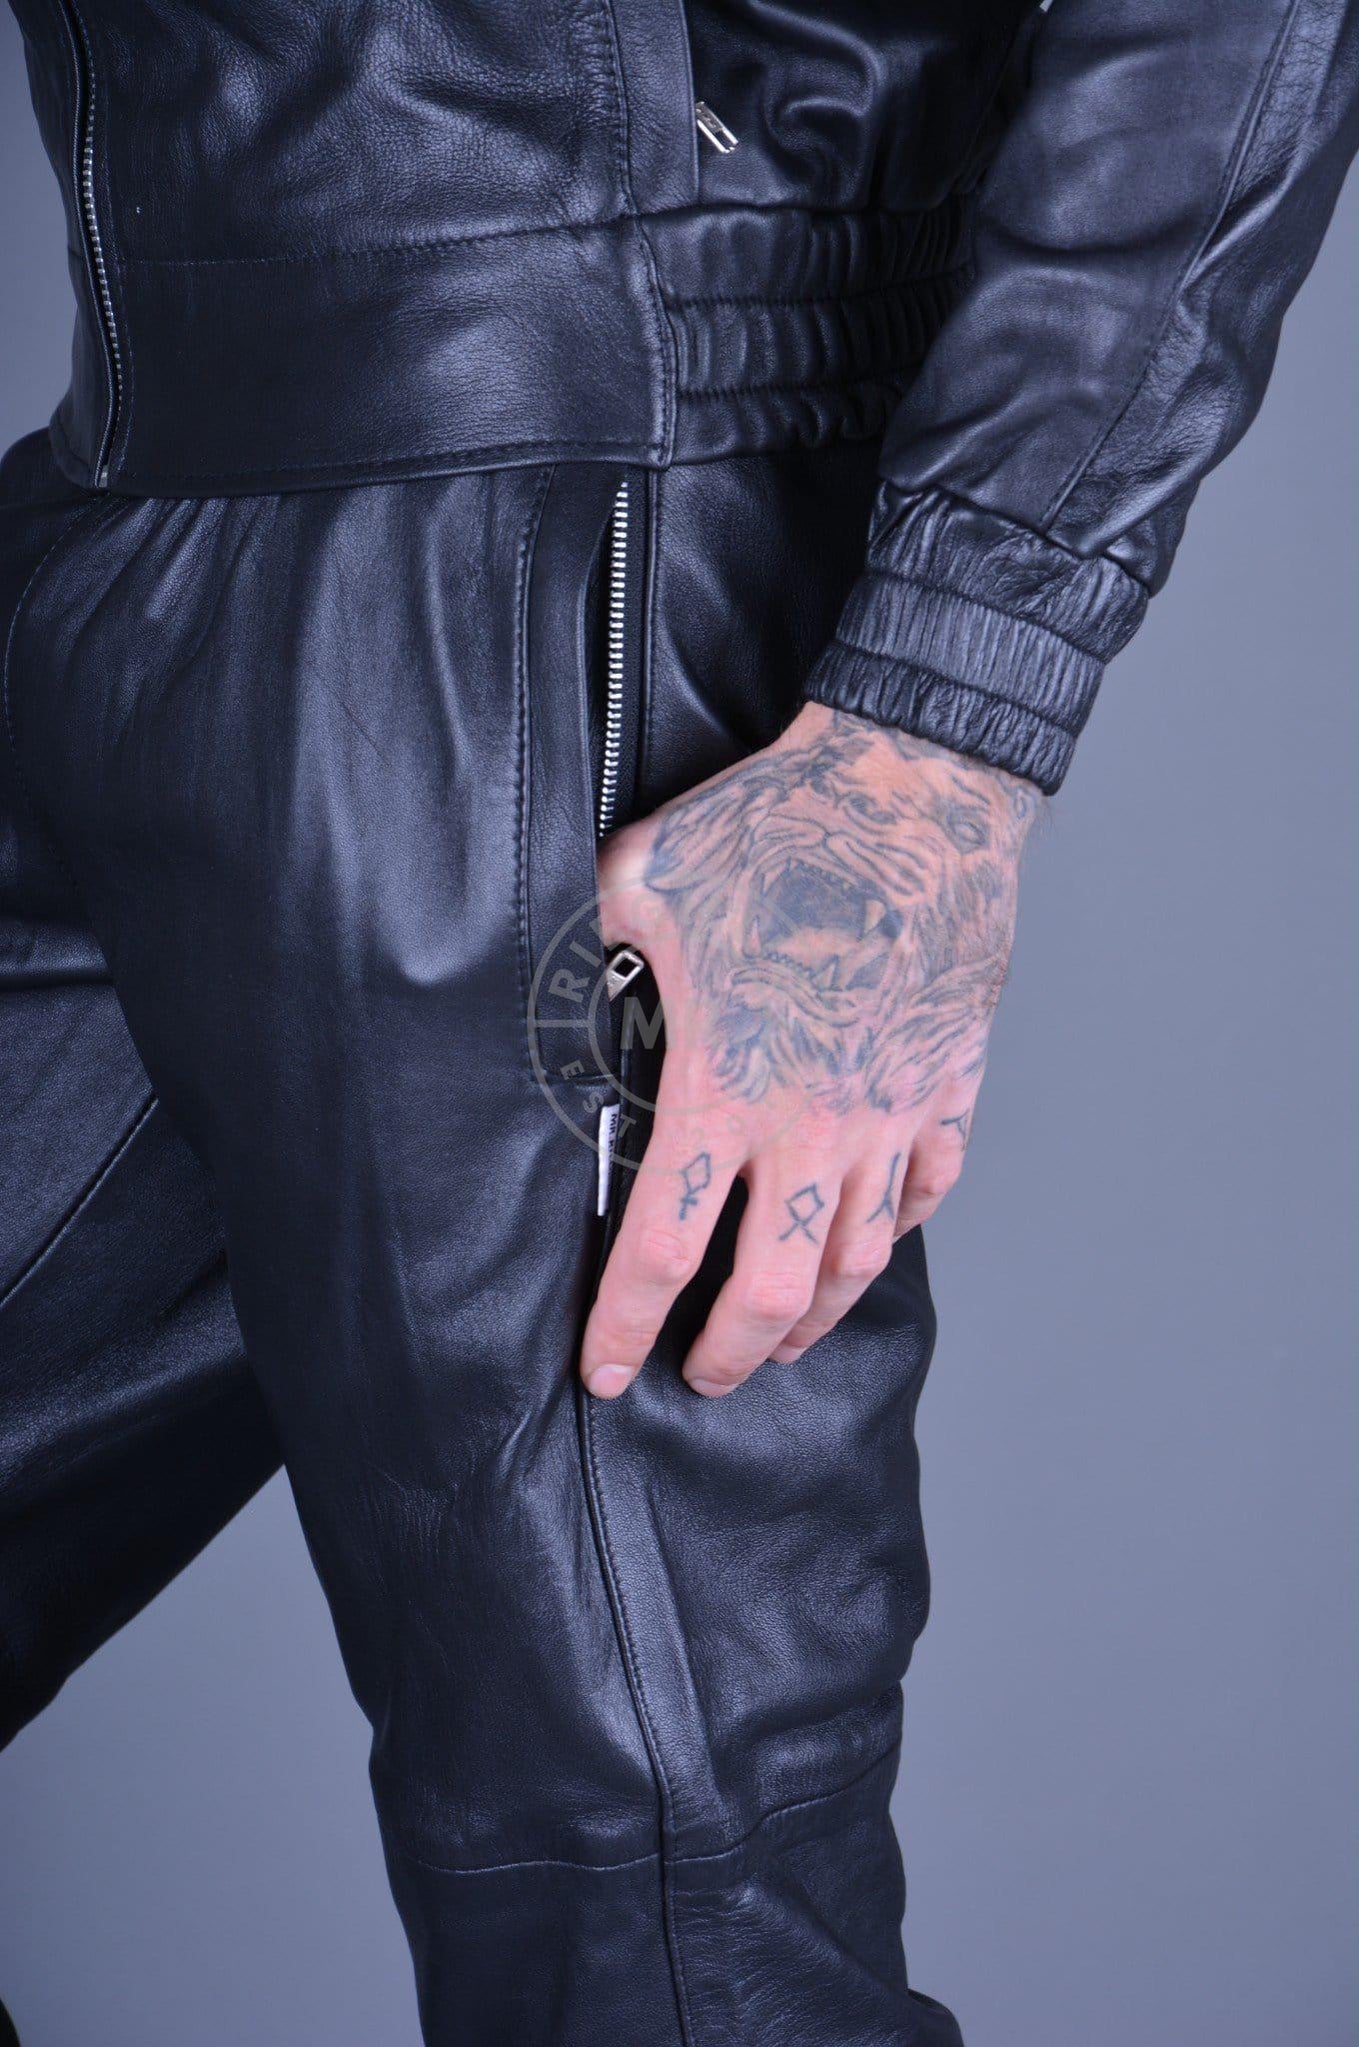 Black Leather Tracksuit Pants at MR. Riegillio